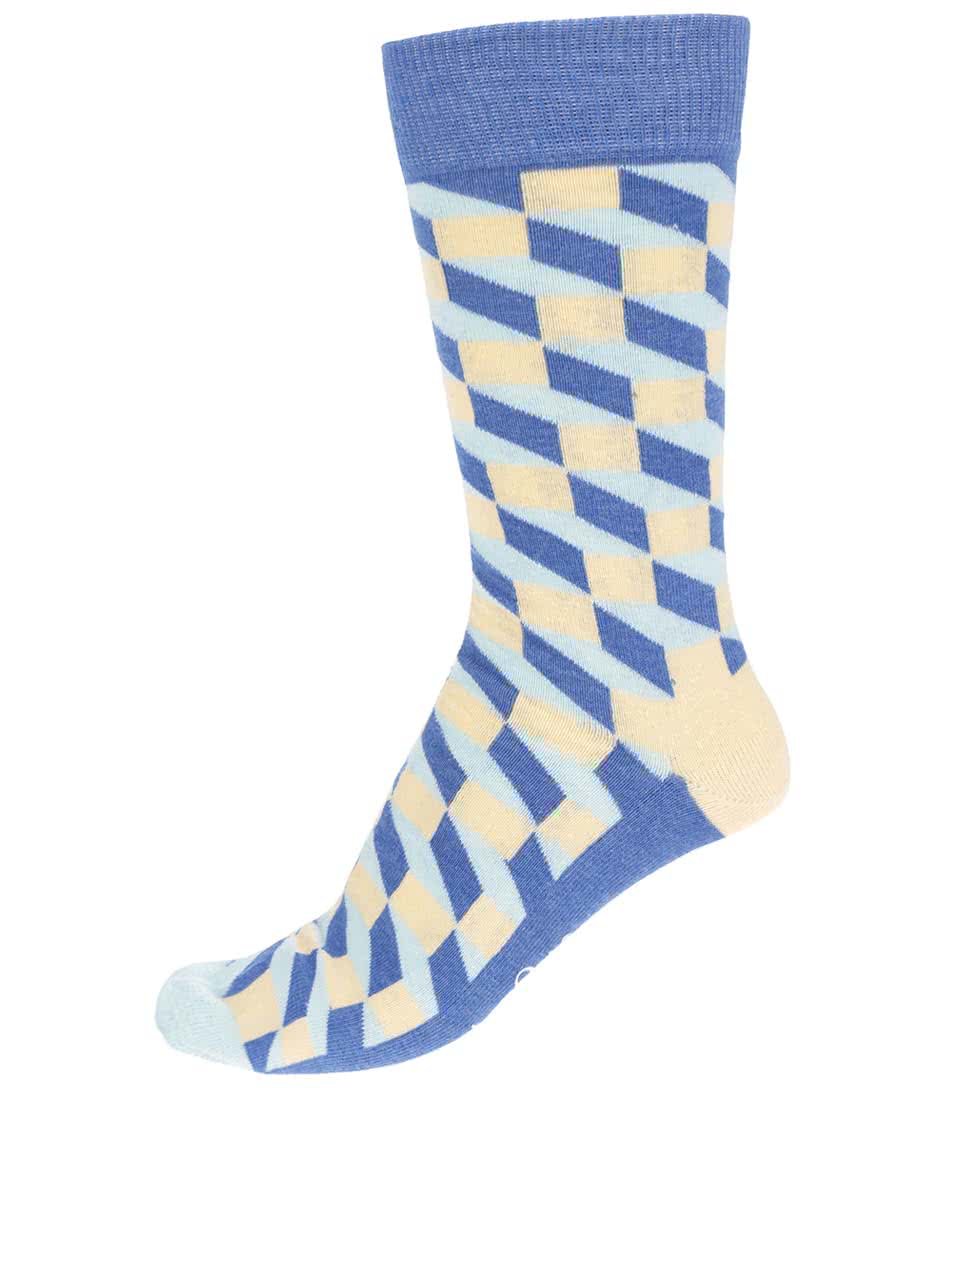 Modro-žluté vzorované pánské ponožky Happy Socks Filled Optic